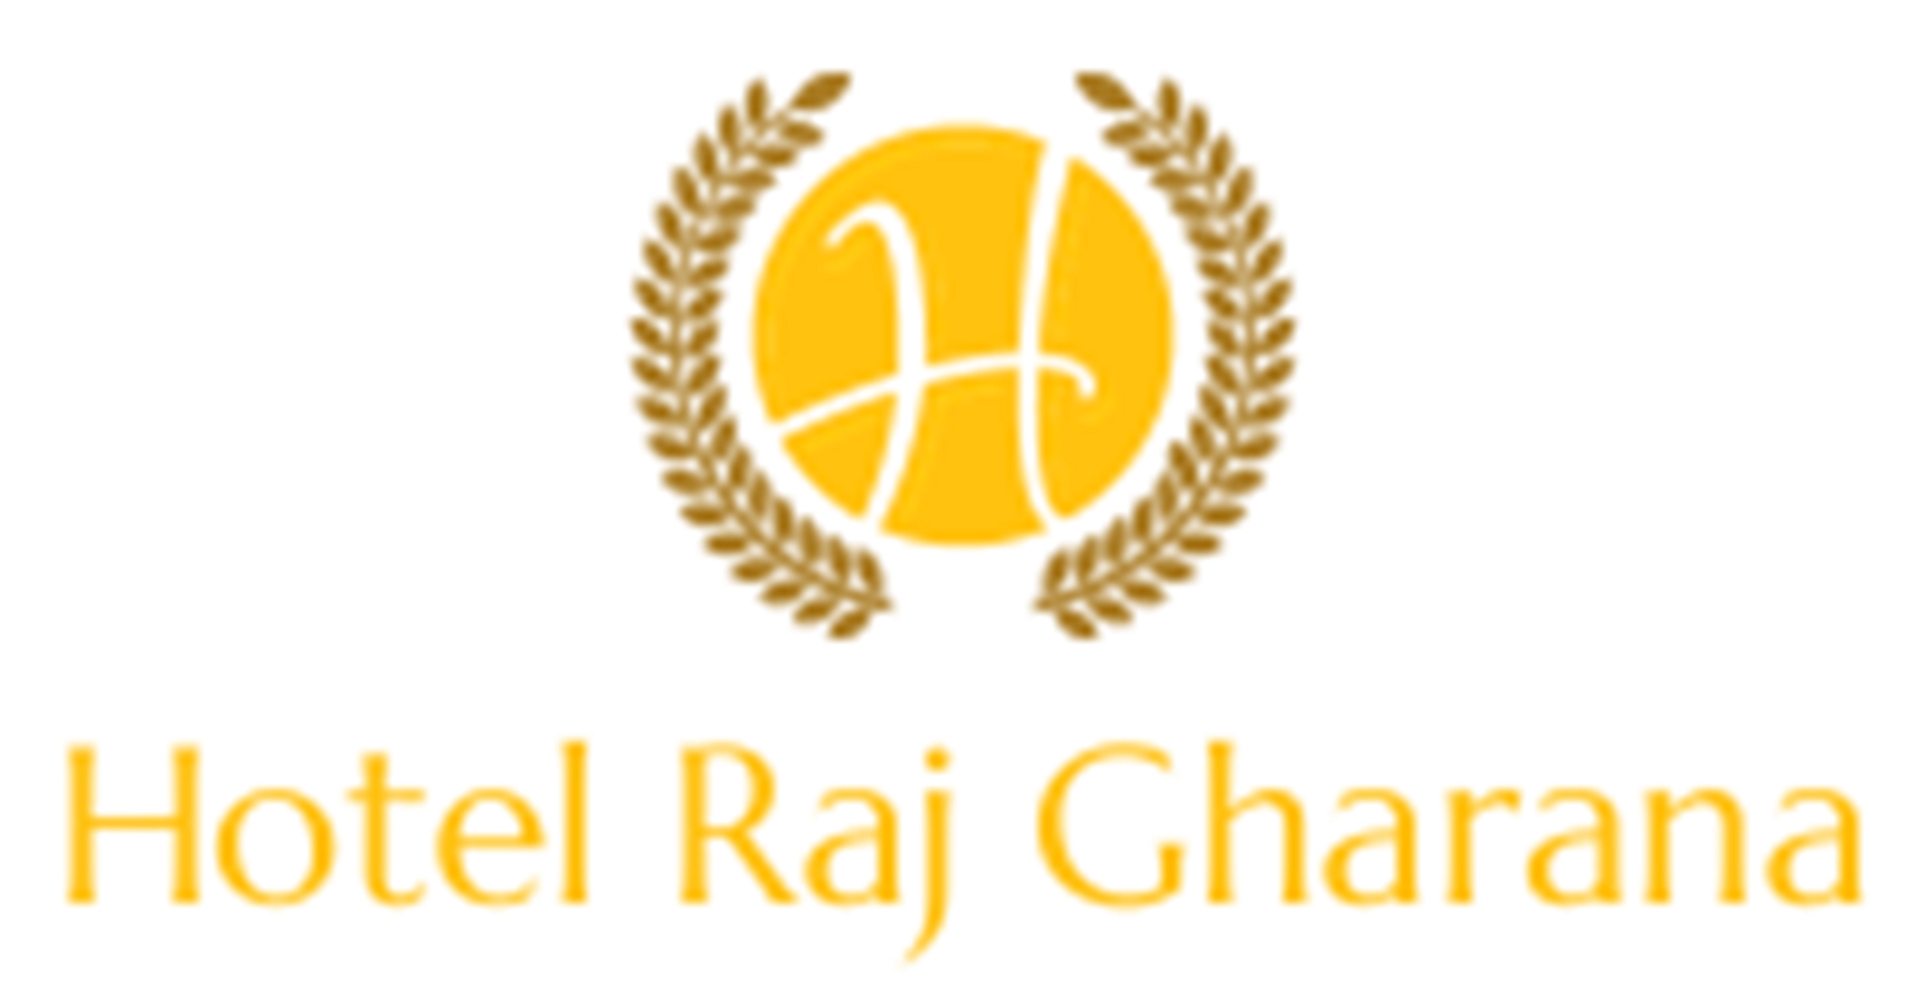 Hotel Raj Gharana